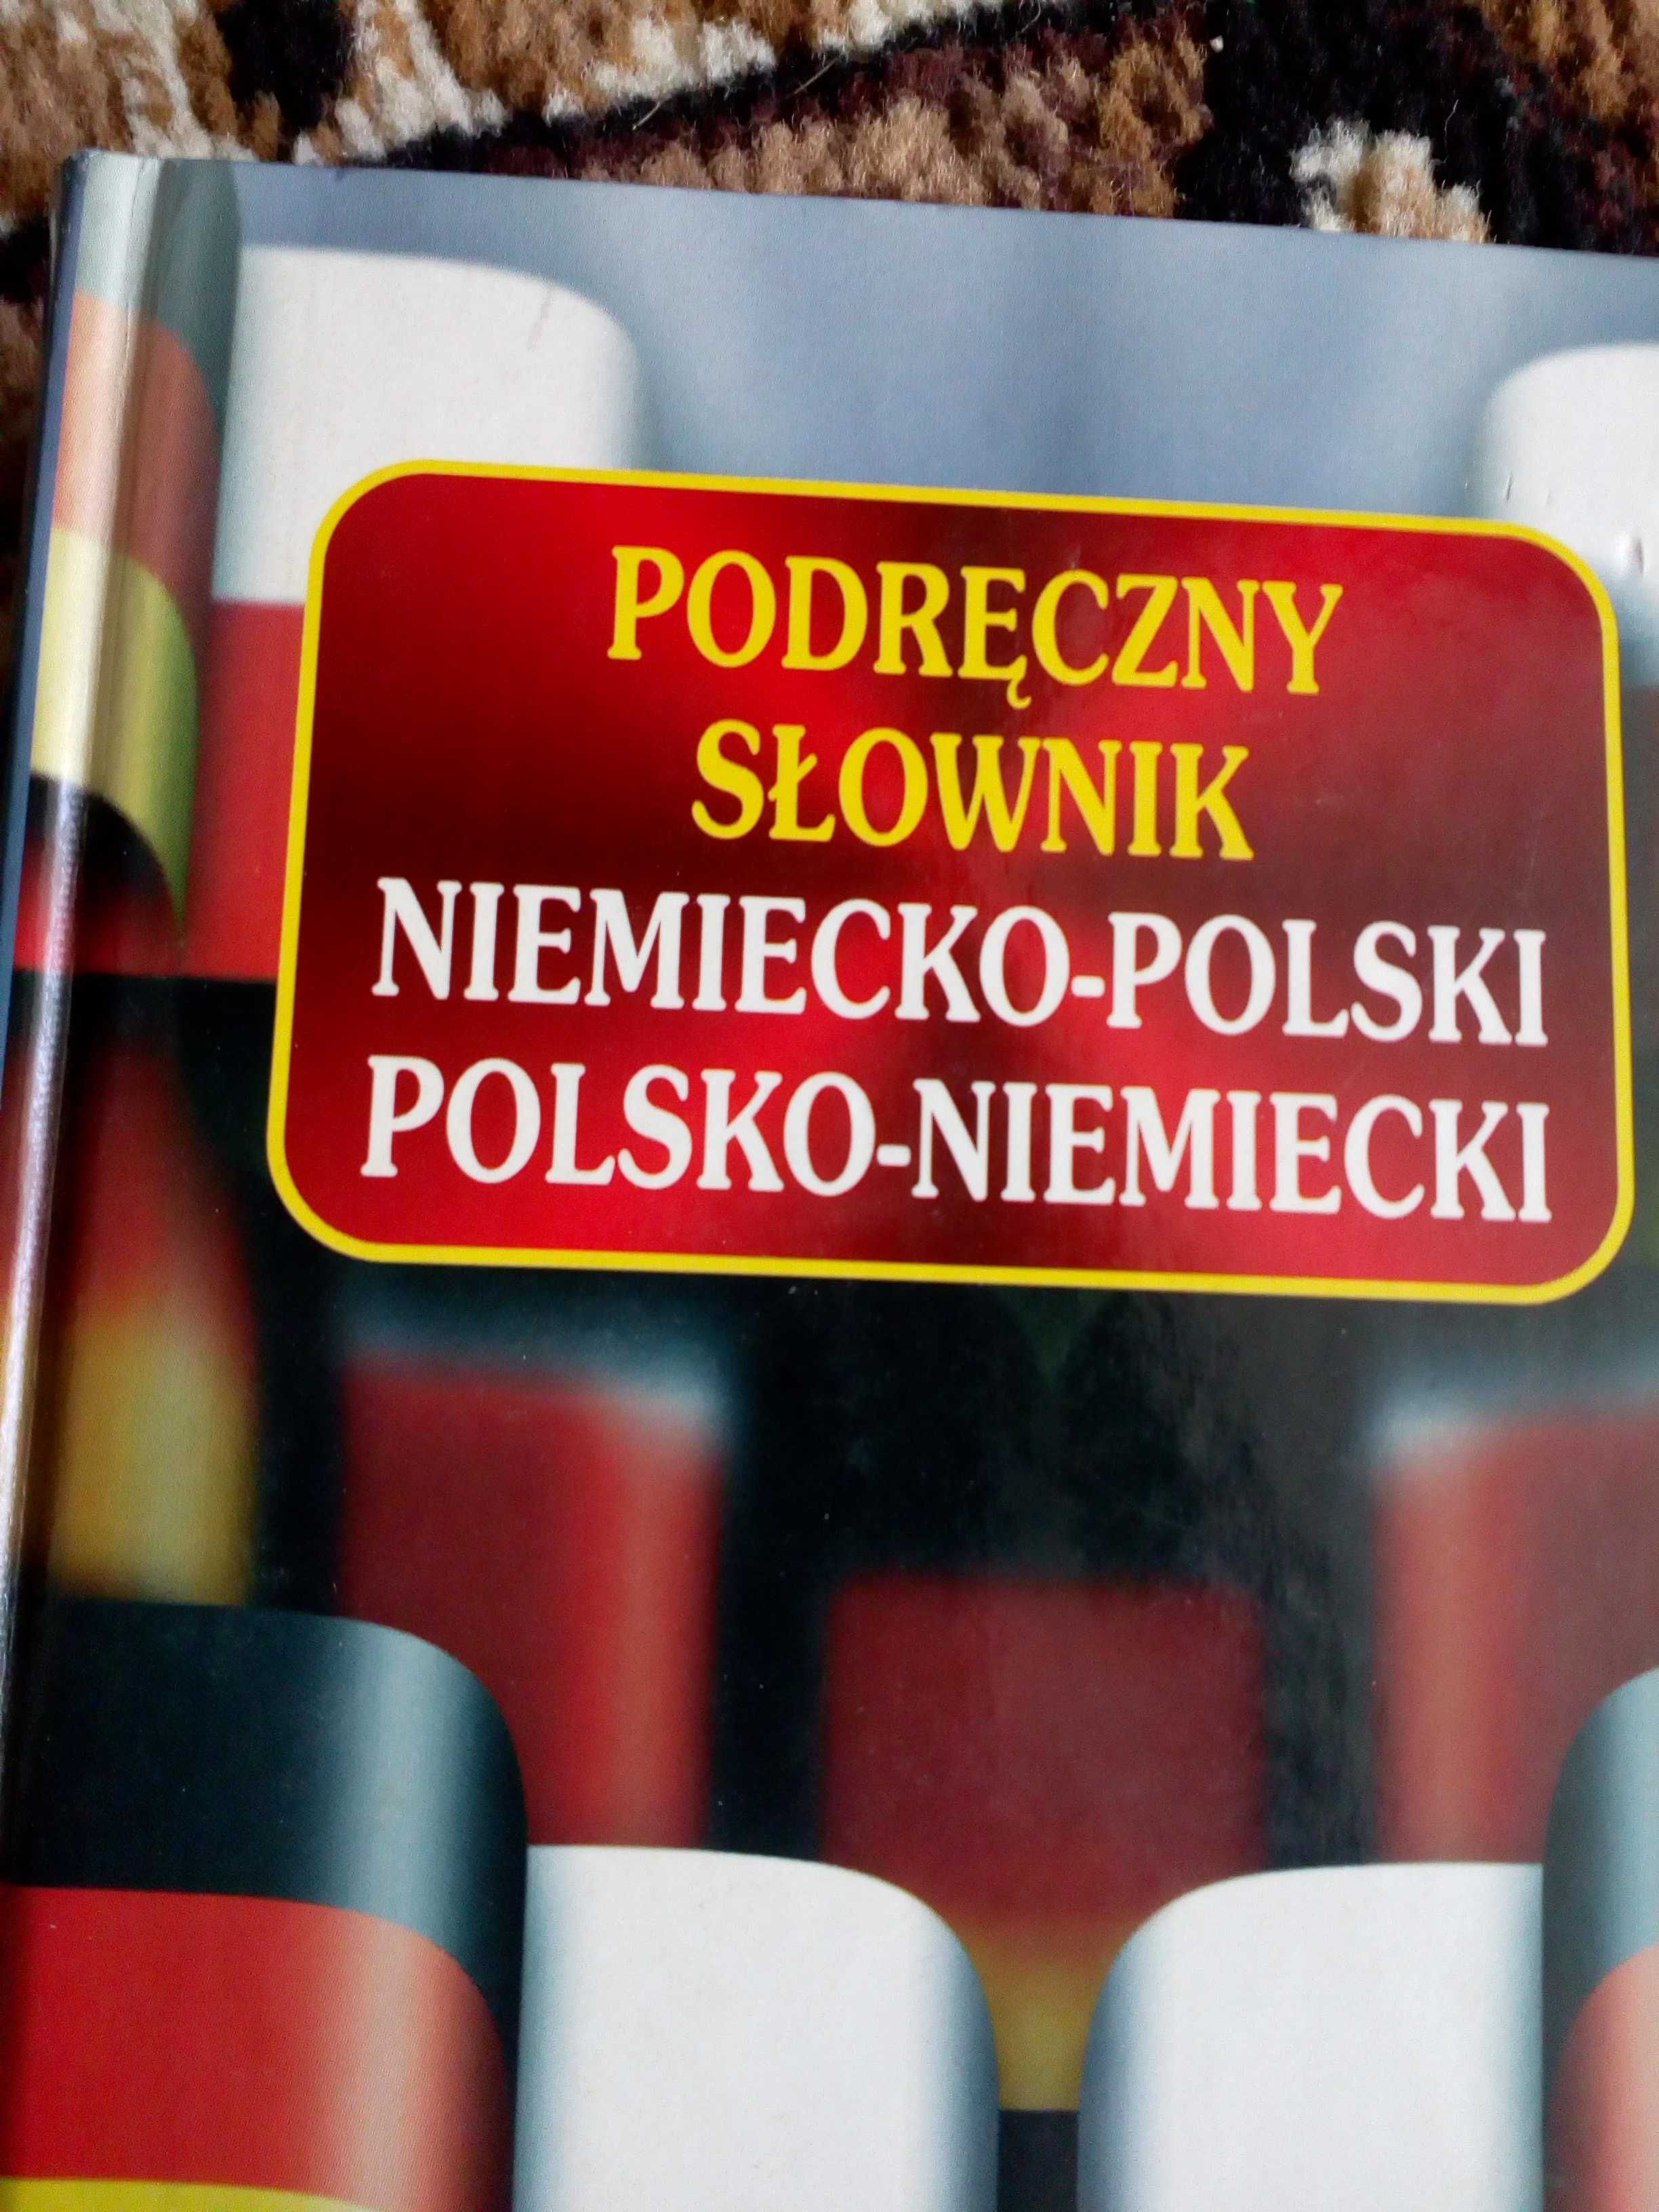 Podręczny słownik niemiecki polski polsko niemiecki